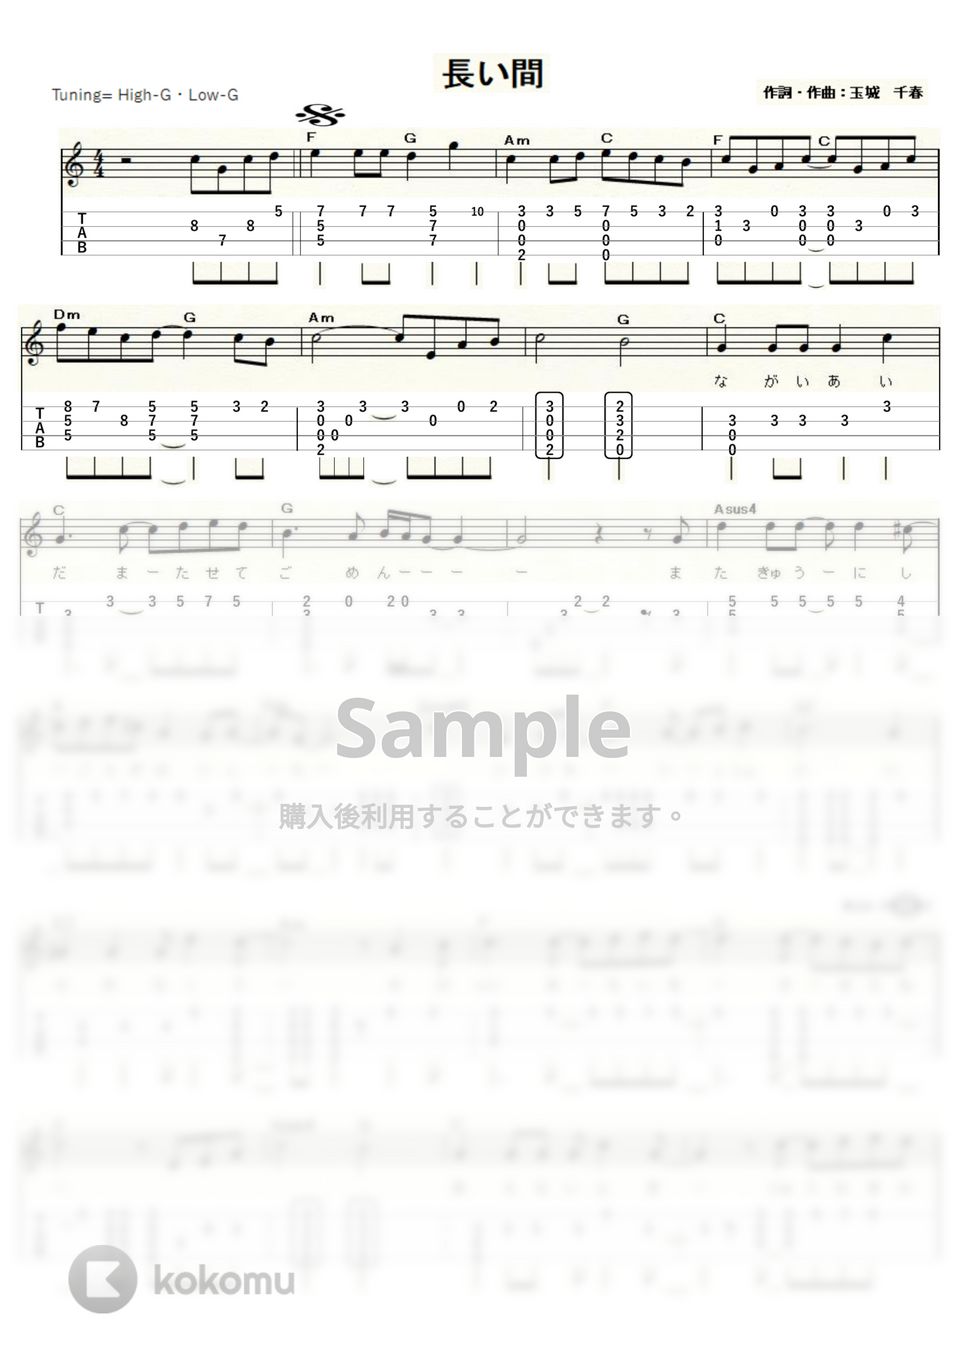 Kiroro - 長い間 (ｳｸﾚﾚｿﾛ/High-G,Low-G) by ukulelepapa